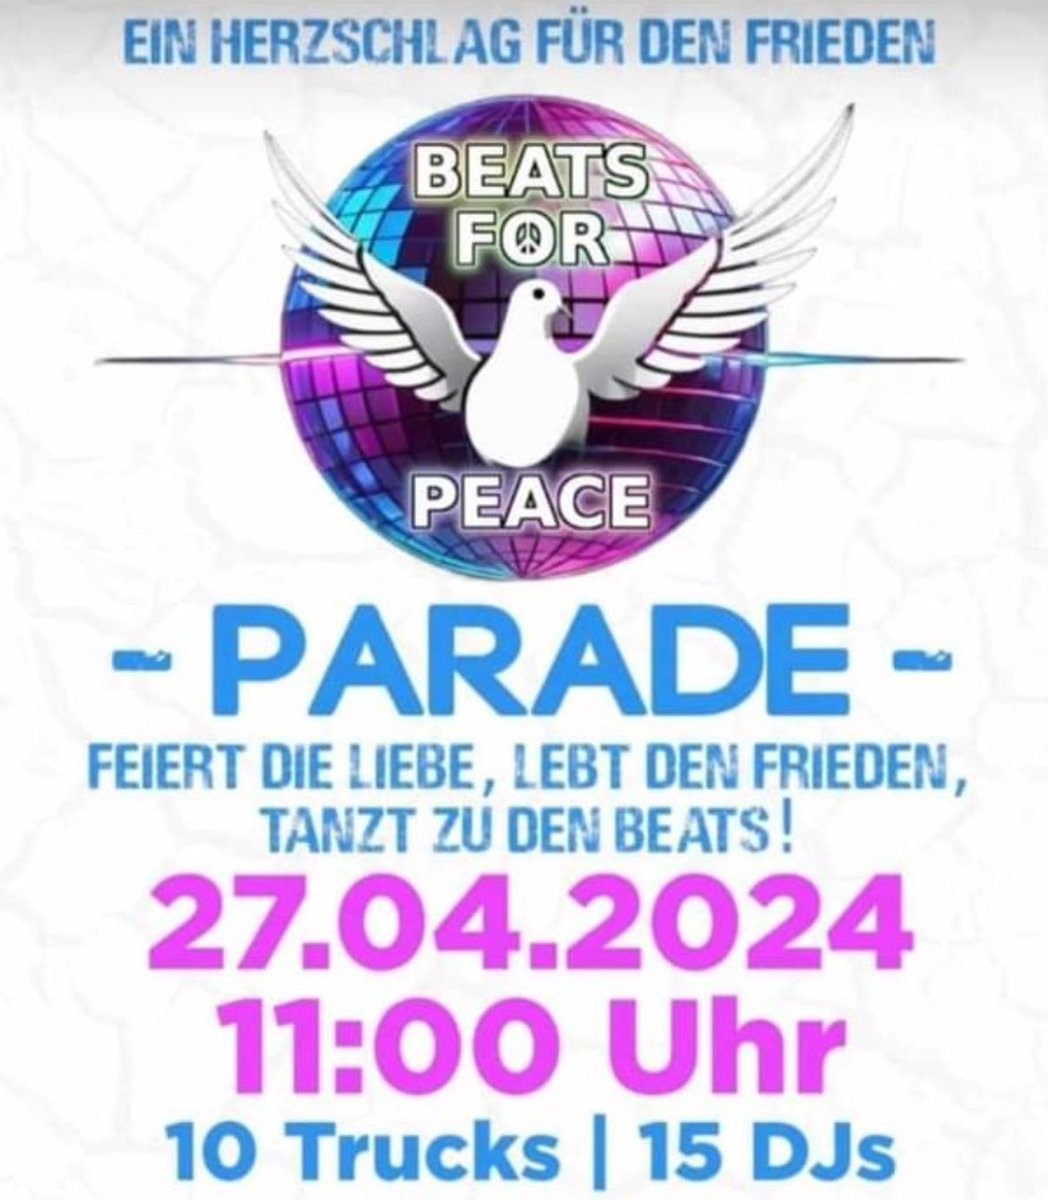 Kommt zahlreich und feiert mit uns das Leben. Frieden und Liebe für die Welt! 🌍

#life #love #peace #beats #techno #music #amina 
#berlin #b2704 #germany 

open.spotify.com/playlist/6jzUN…